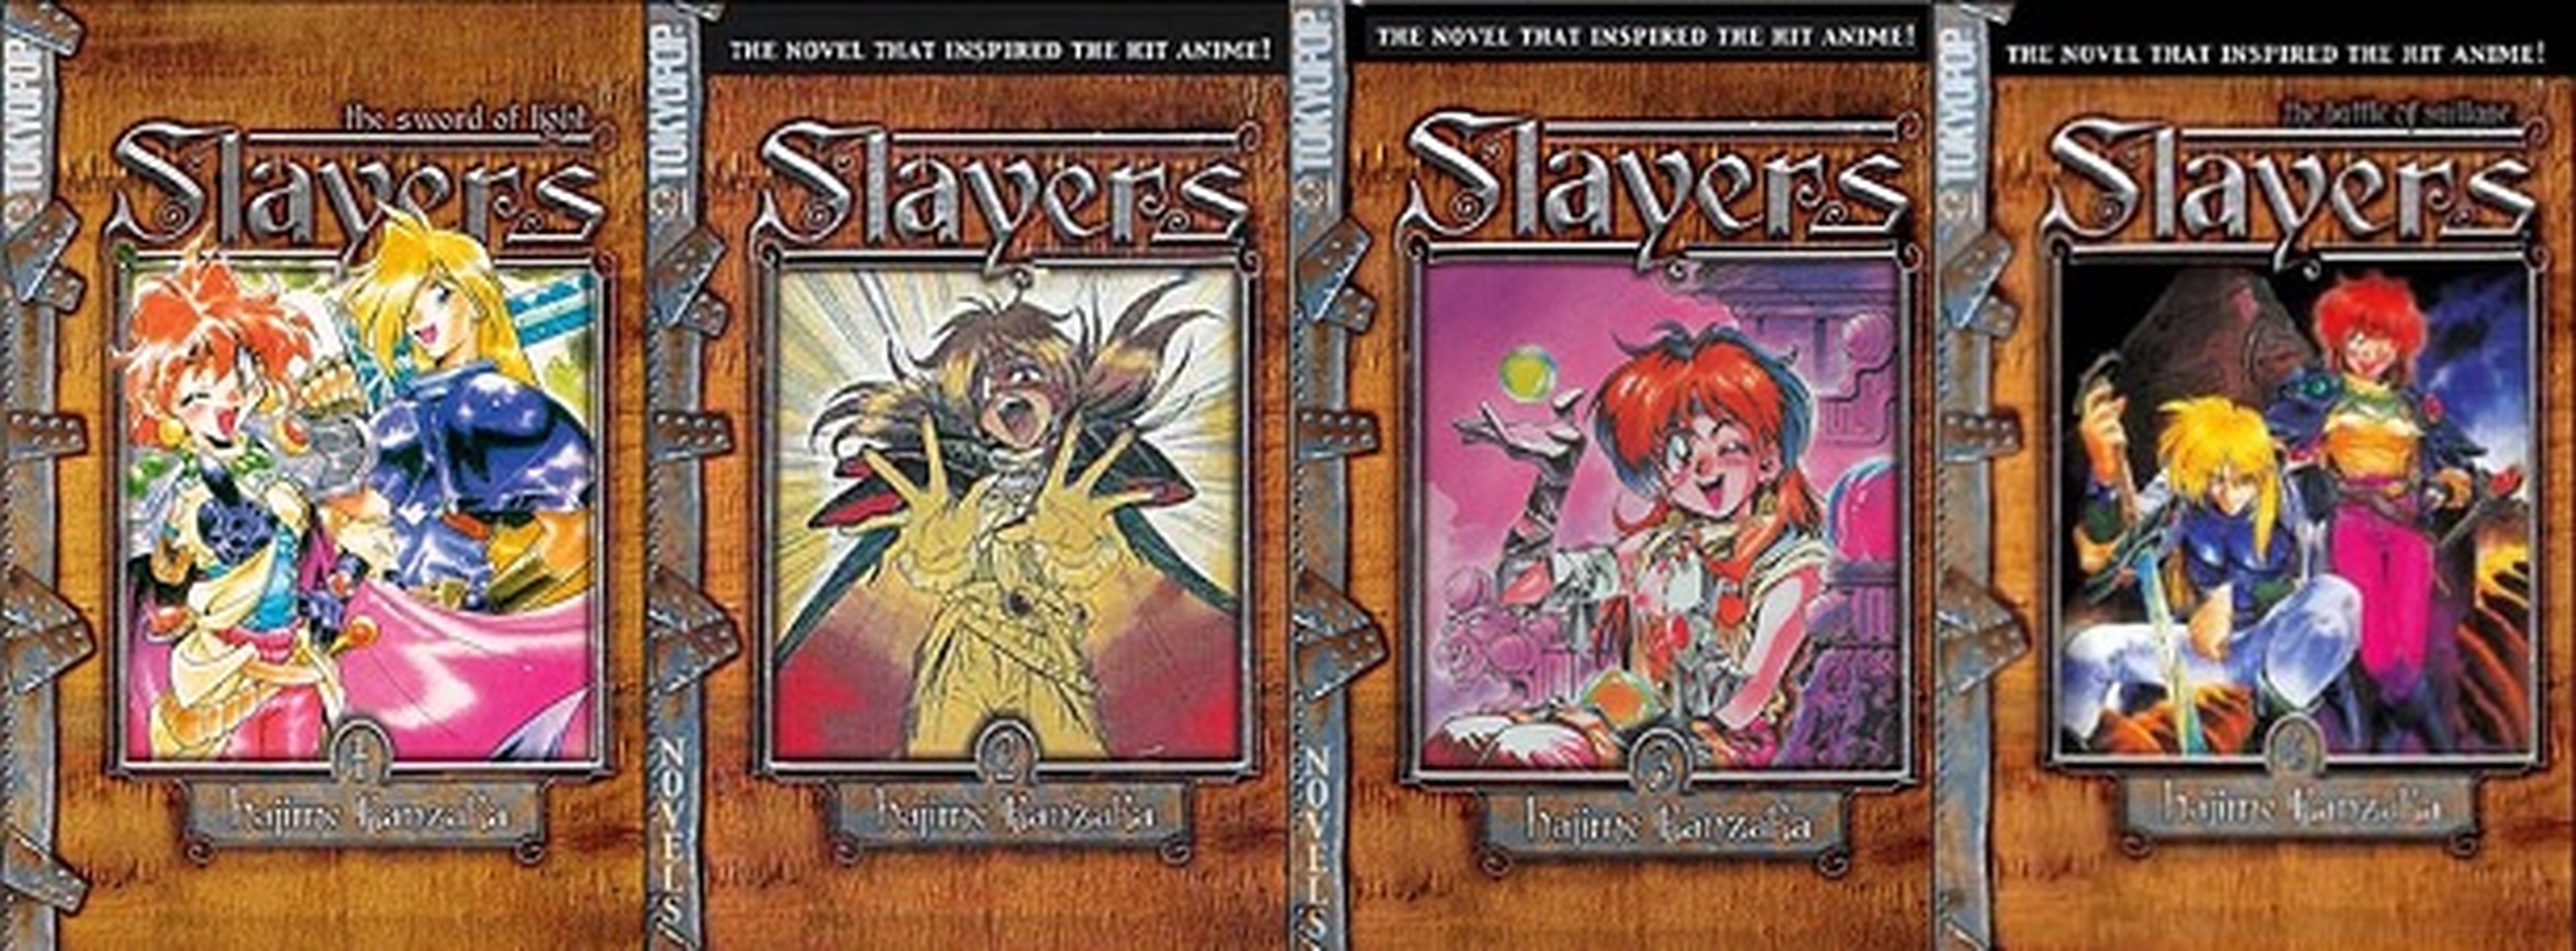 La magia de Slayers: Reena y Gaudy